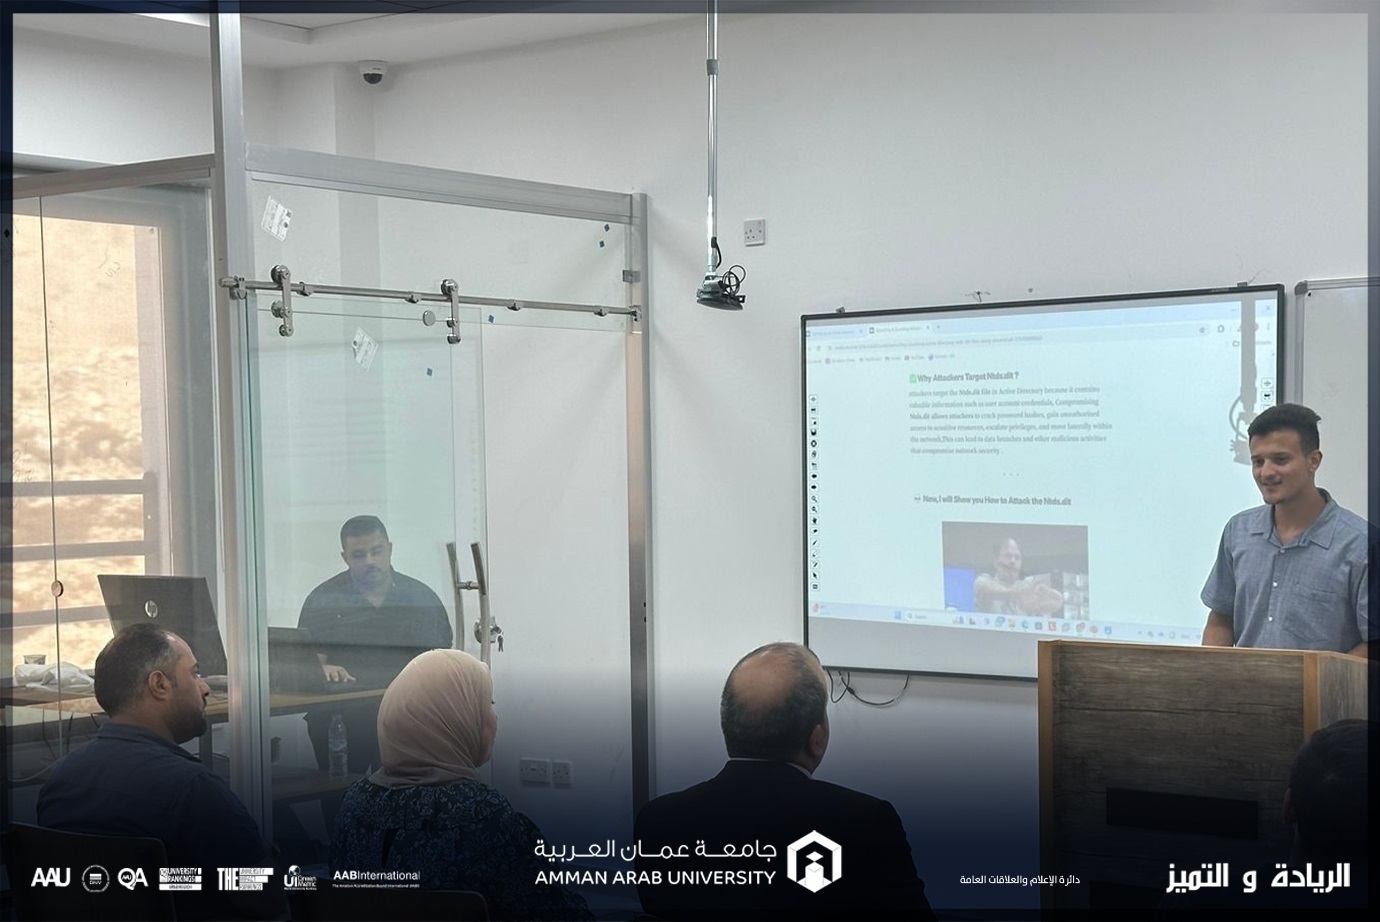 قسم تكنولوجيا المعلومات في "عمان العربية" ينظم لقاءً تحفيزيًا لطلبة الأمن السيبراني